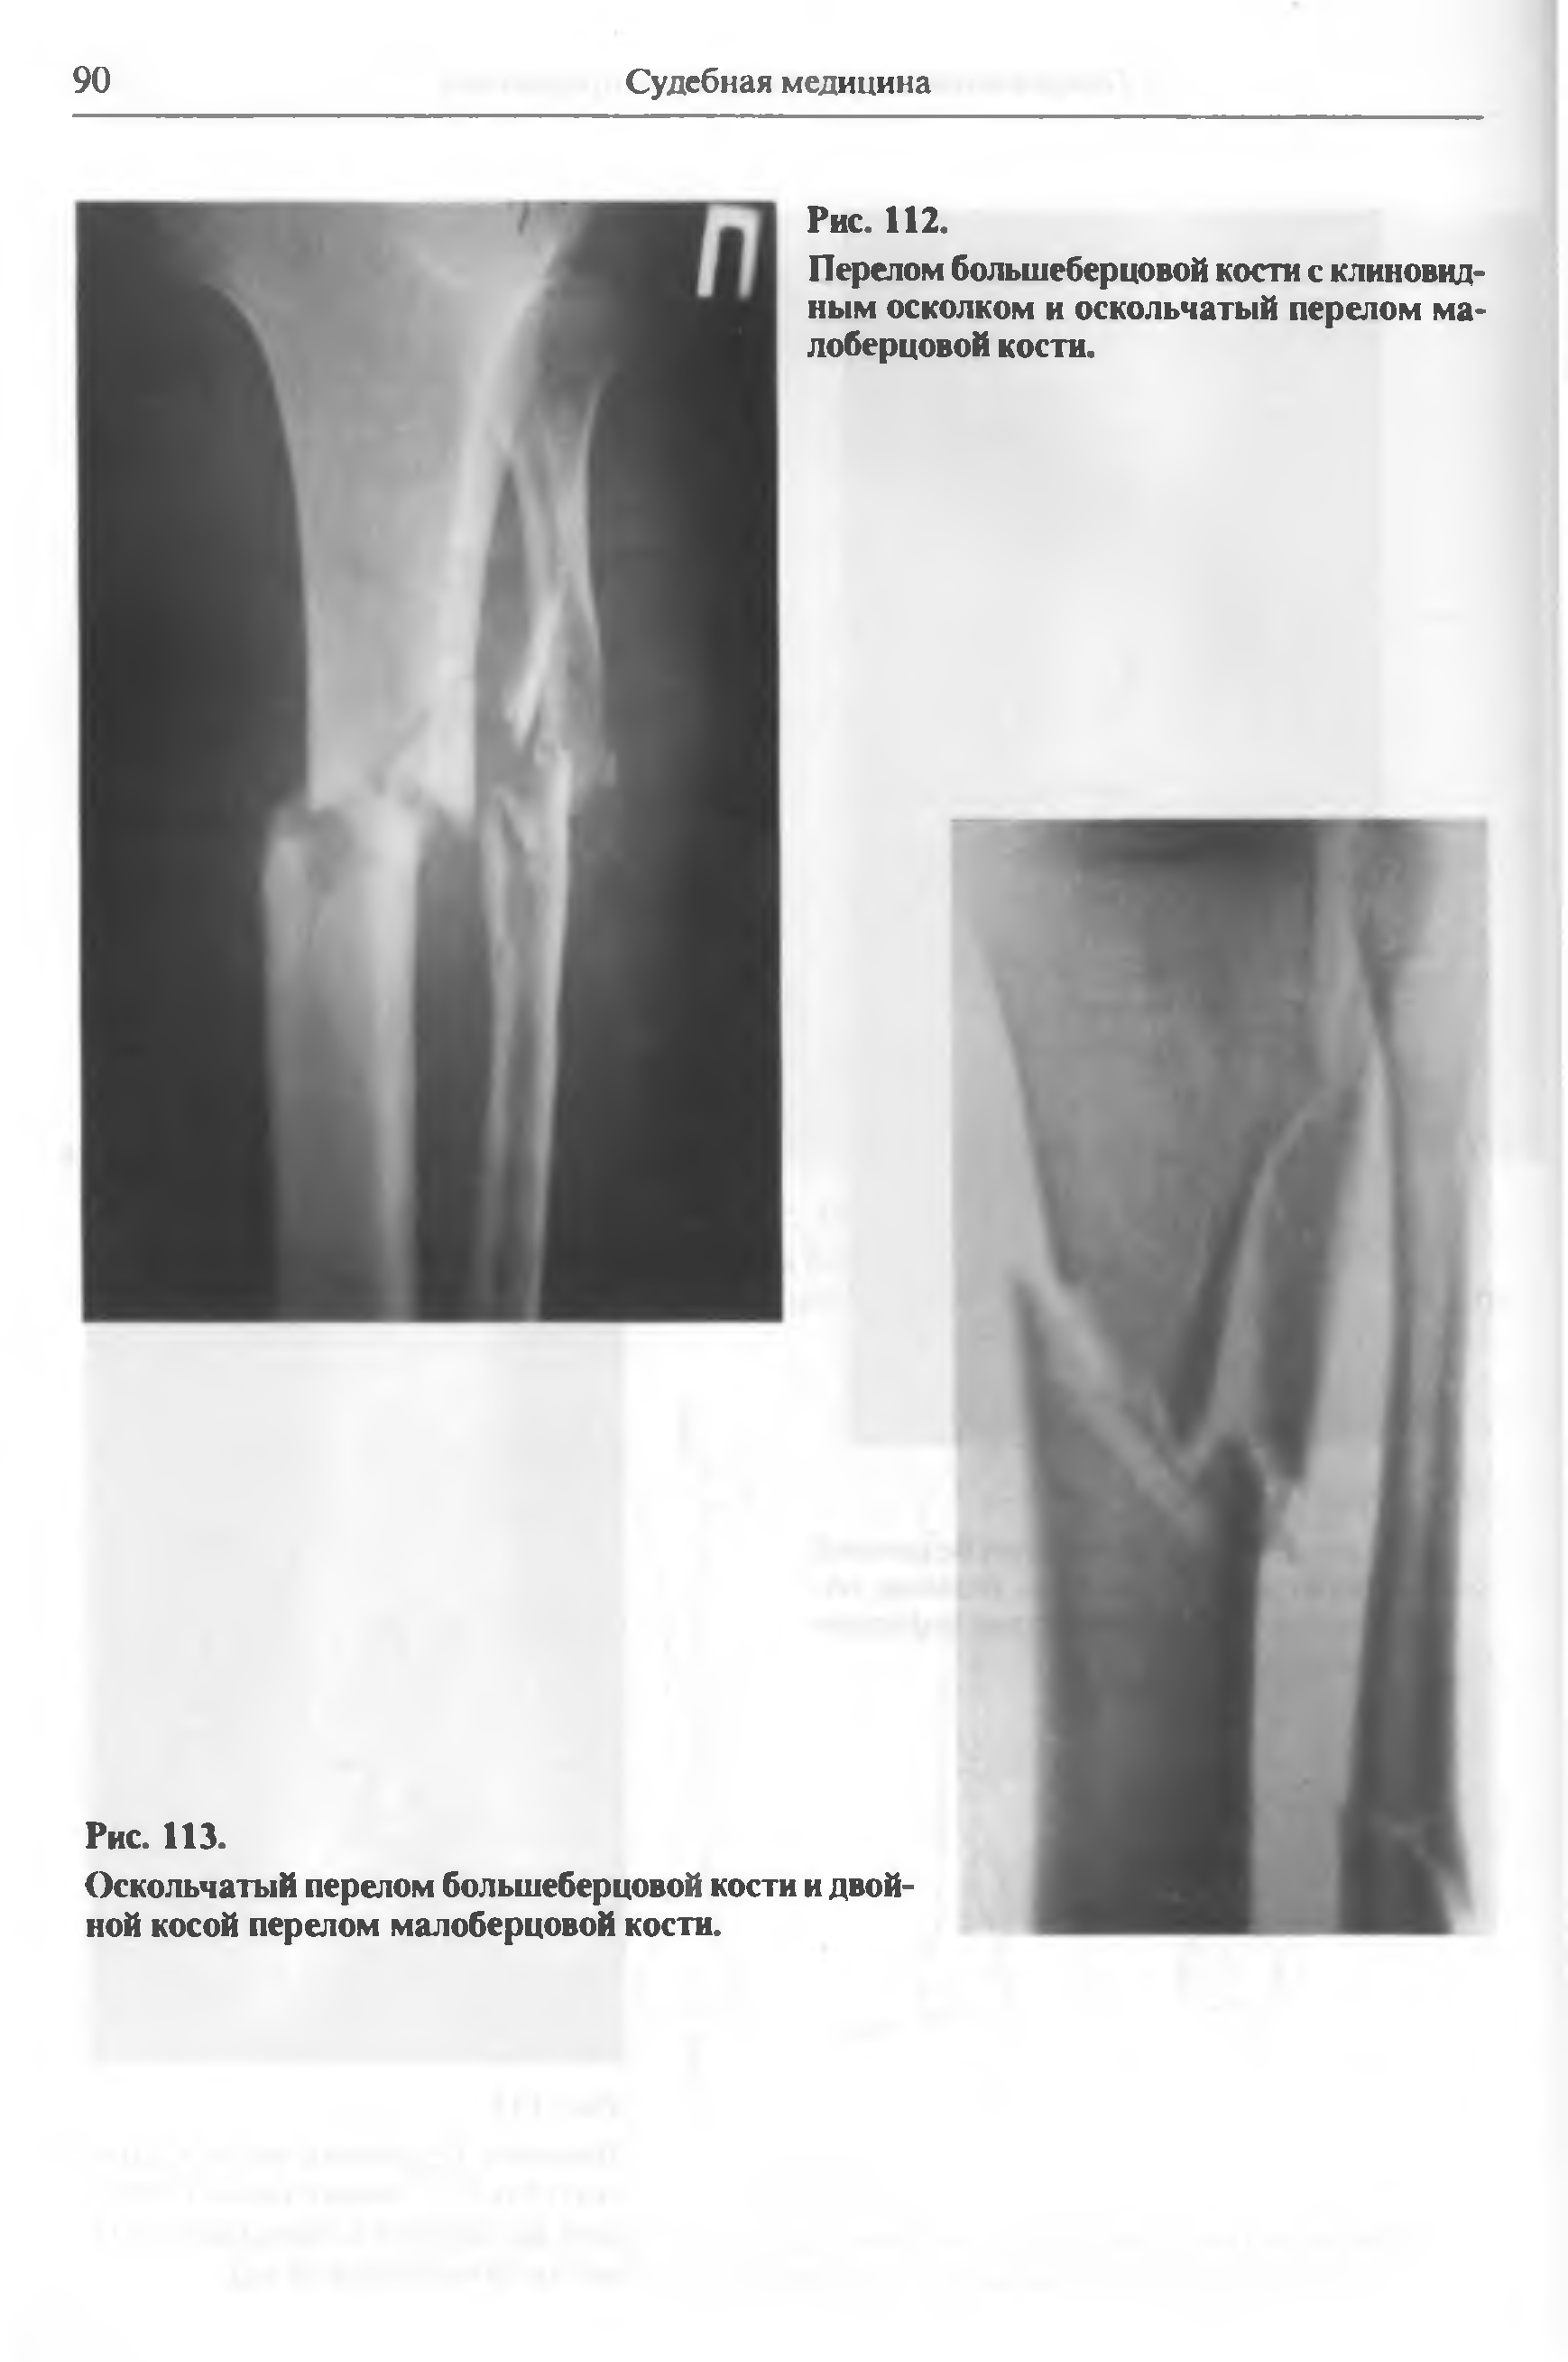 Многооскольчатый перелом большеберцовой кости рентген